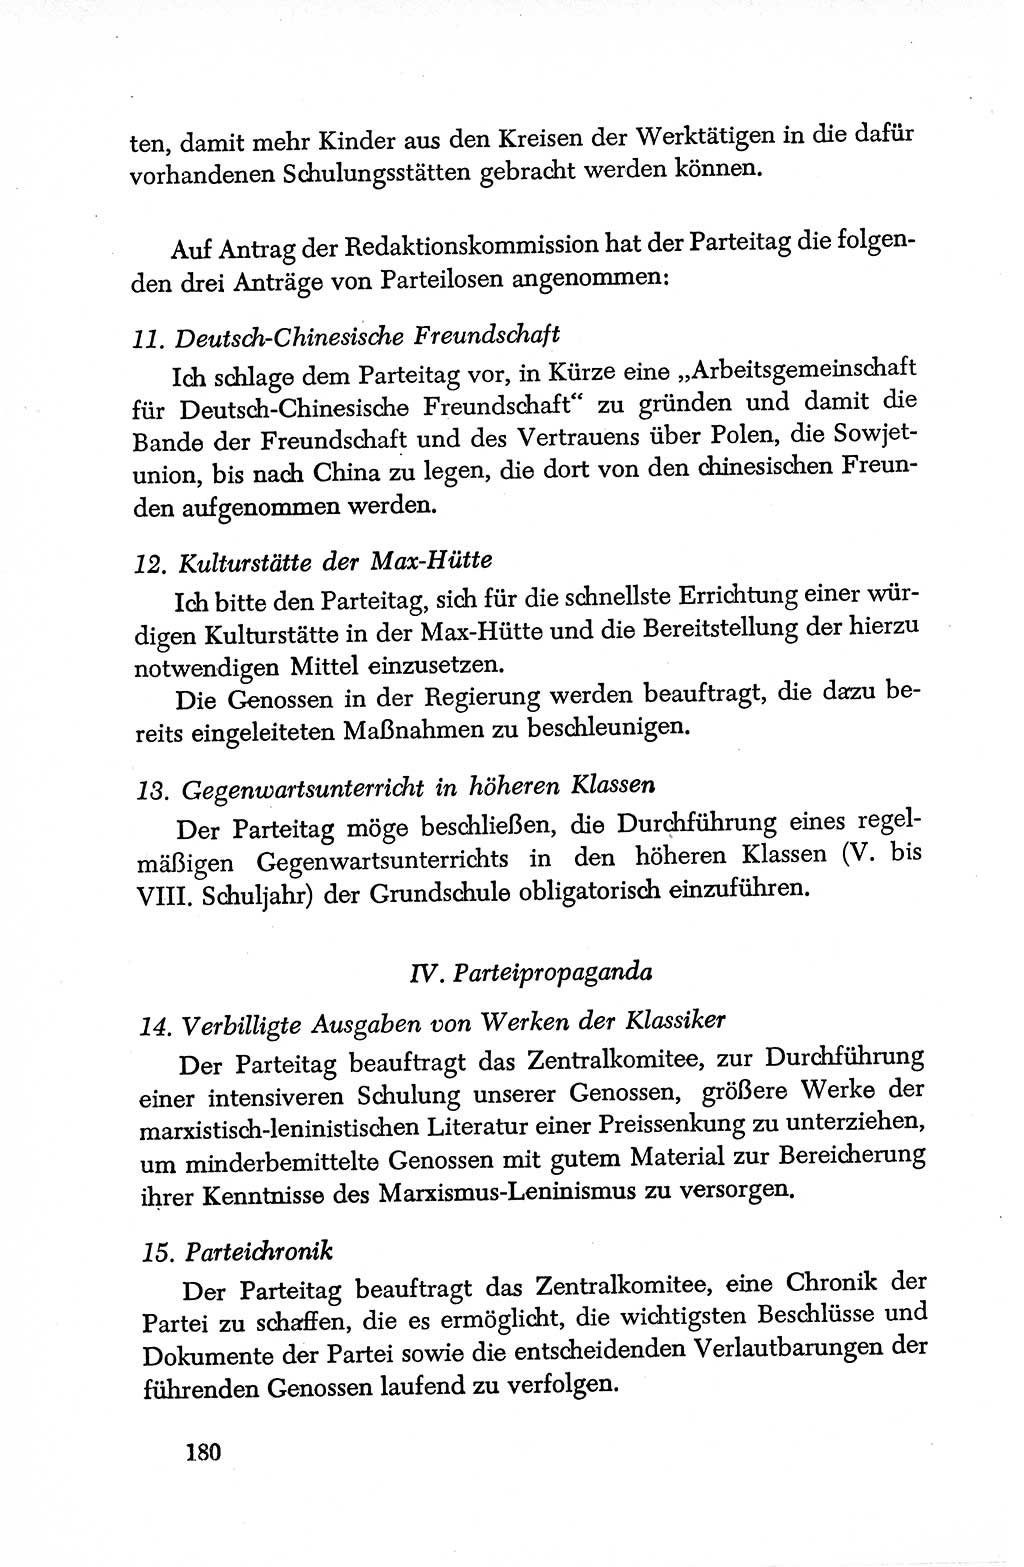 Dokumente der Sozialistischen Einheitspartei Deutschlands (SED) [Deutsche Demokratische Republik (DDR)] 1950-1952, Seite 180 (Dok. SED DDR 1950-1952, S. 180)